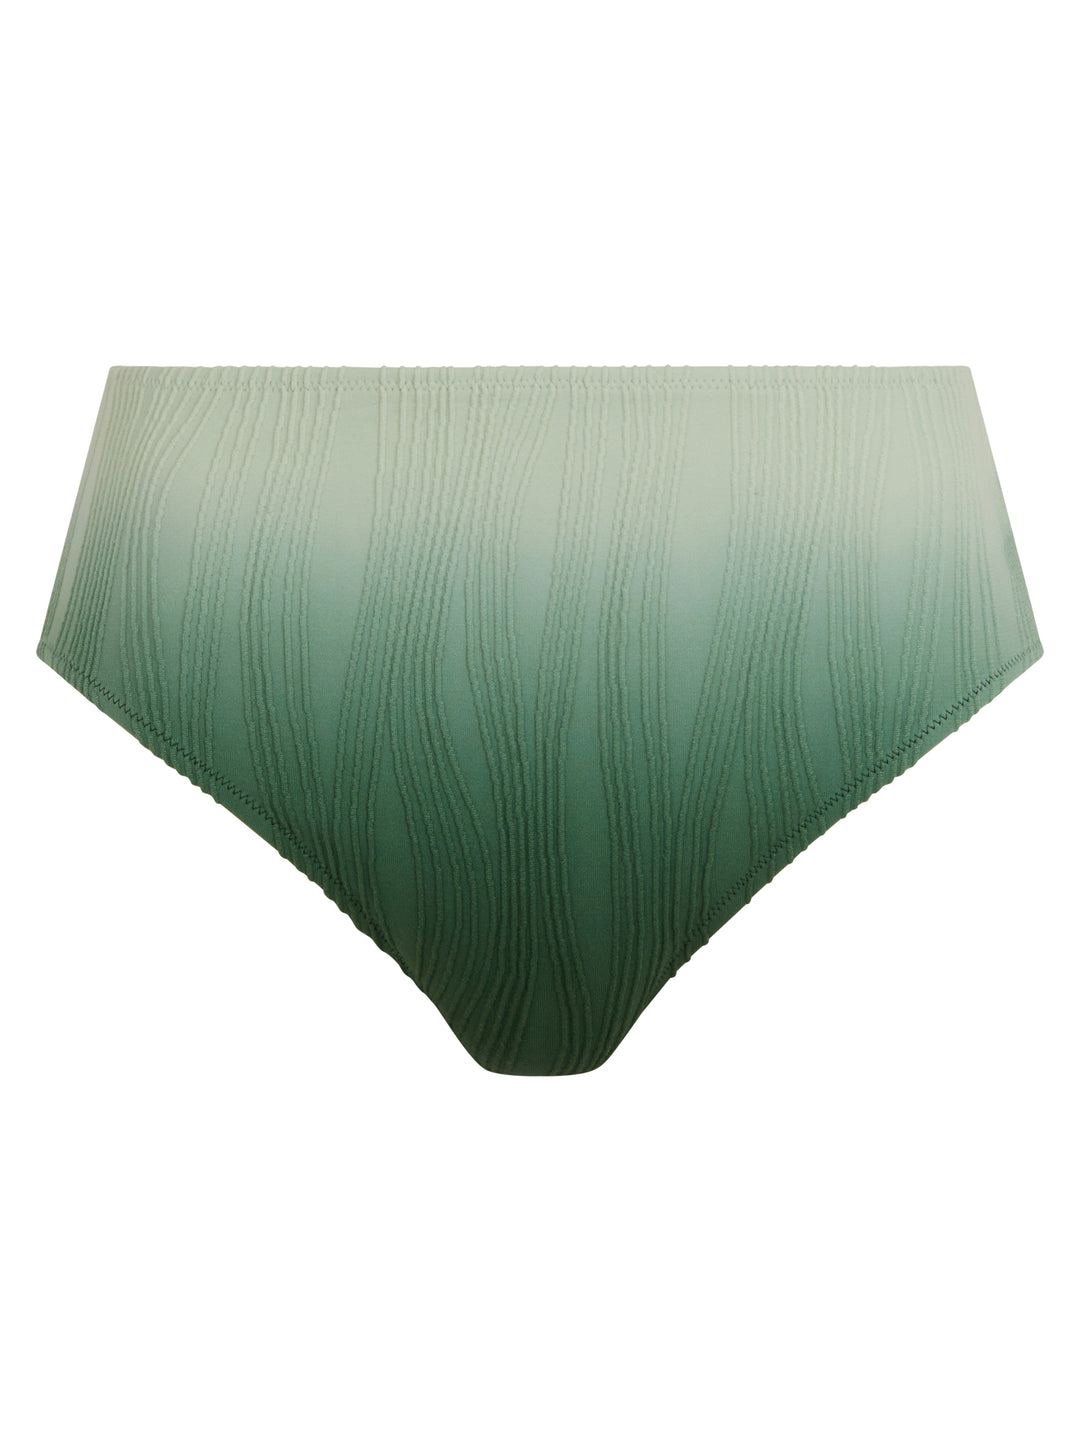 Купальники Chantelle - плавки одного размера, зеленые, с завязками и красками